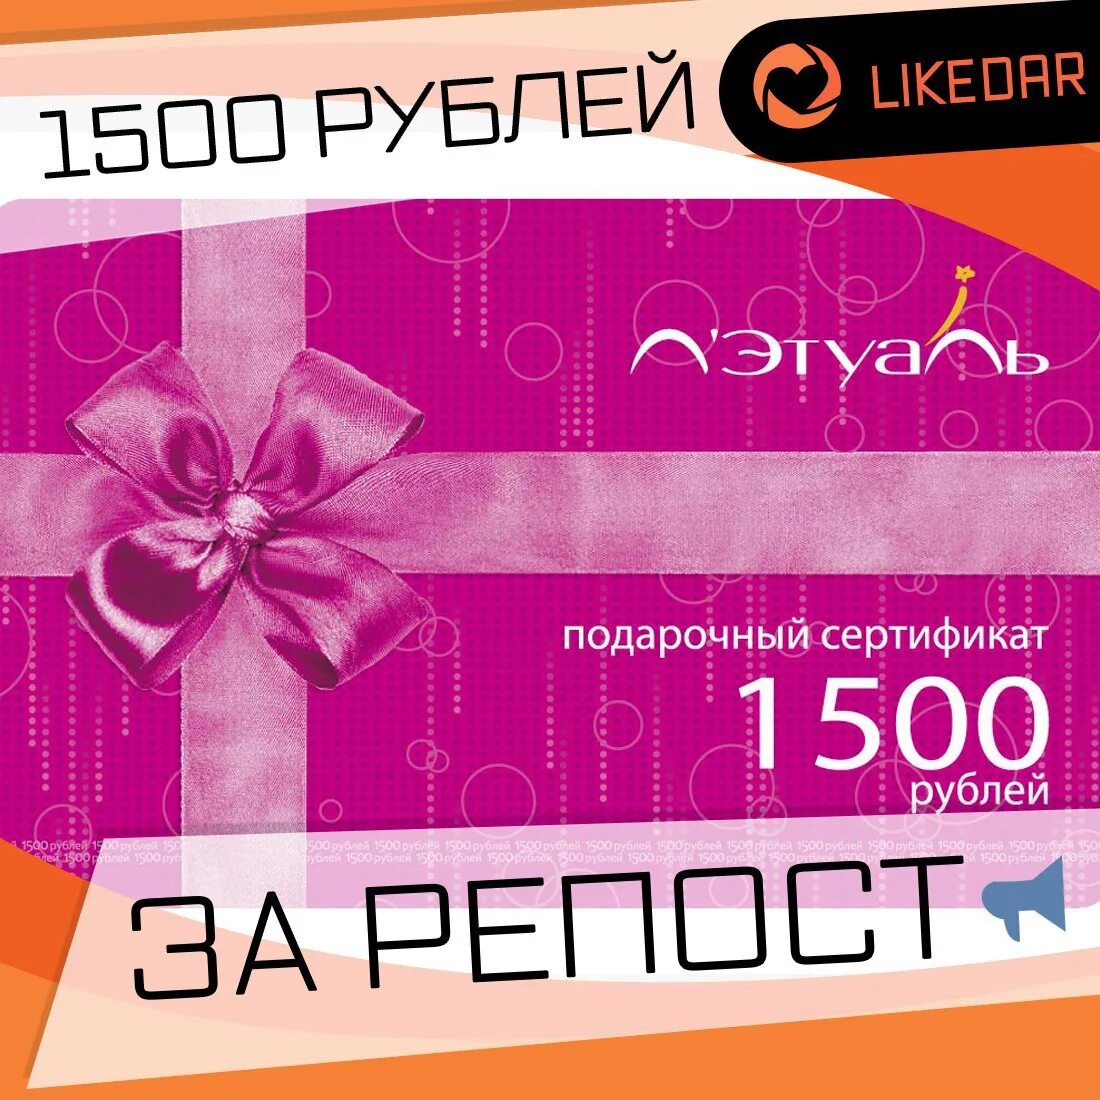 Подарочный сертификат 1500 рублей. Подарочная карта. Этуаль подарочный сертификат. Подарочный сертификат на 1500 руб. Можно сдать сертификат летуаль